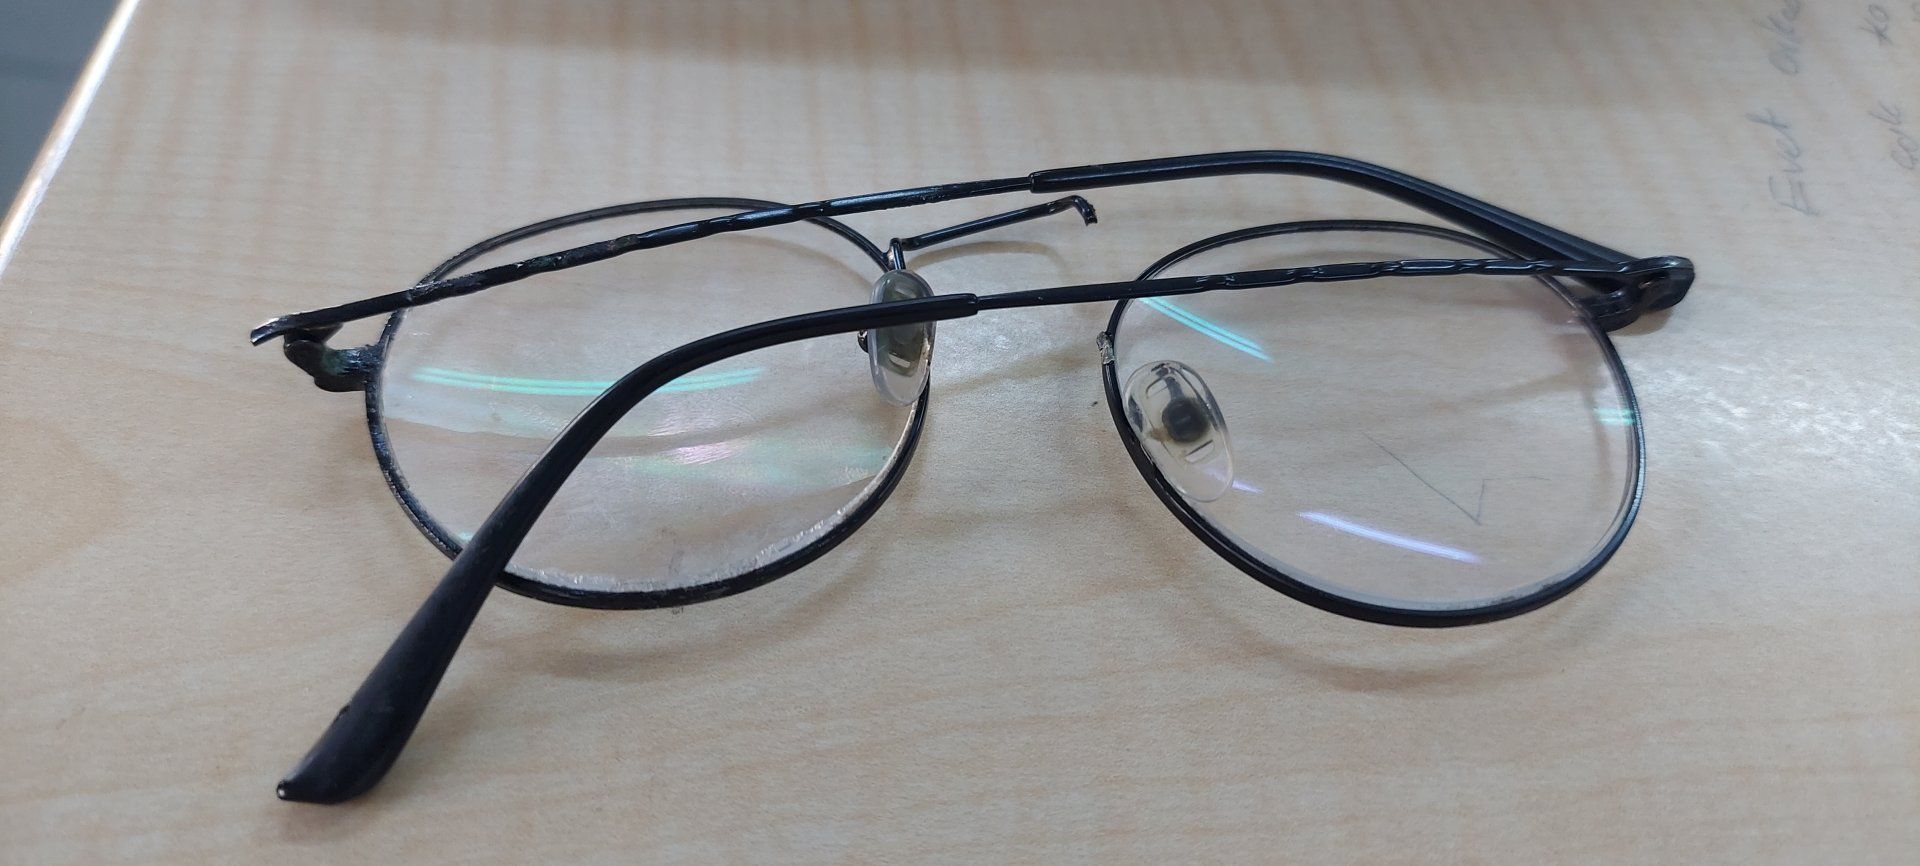 Gözlük çerçevesini yaptırmak ne kadara mal olur? | Technopat Sosyal